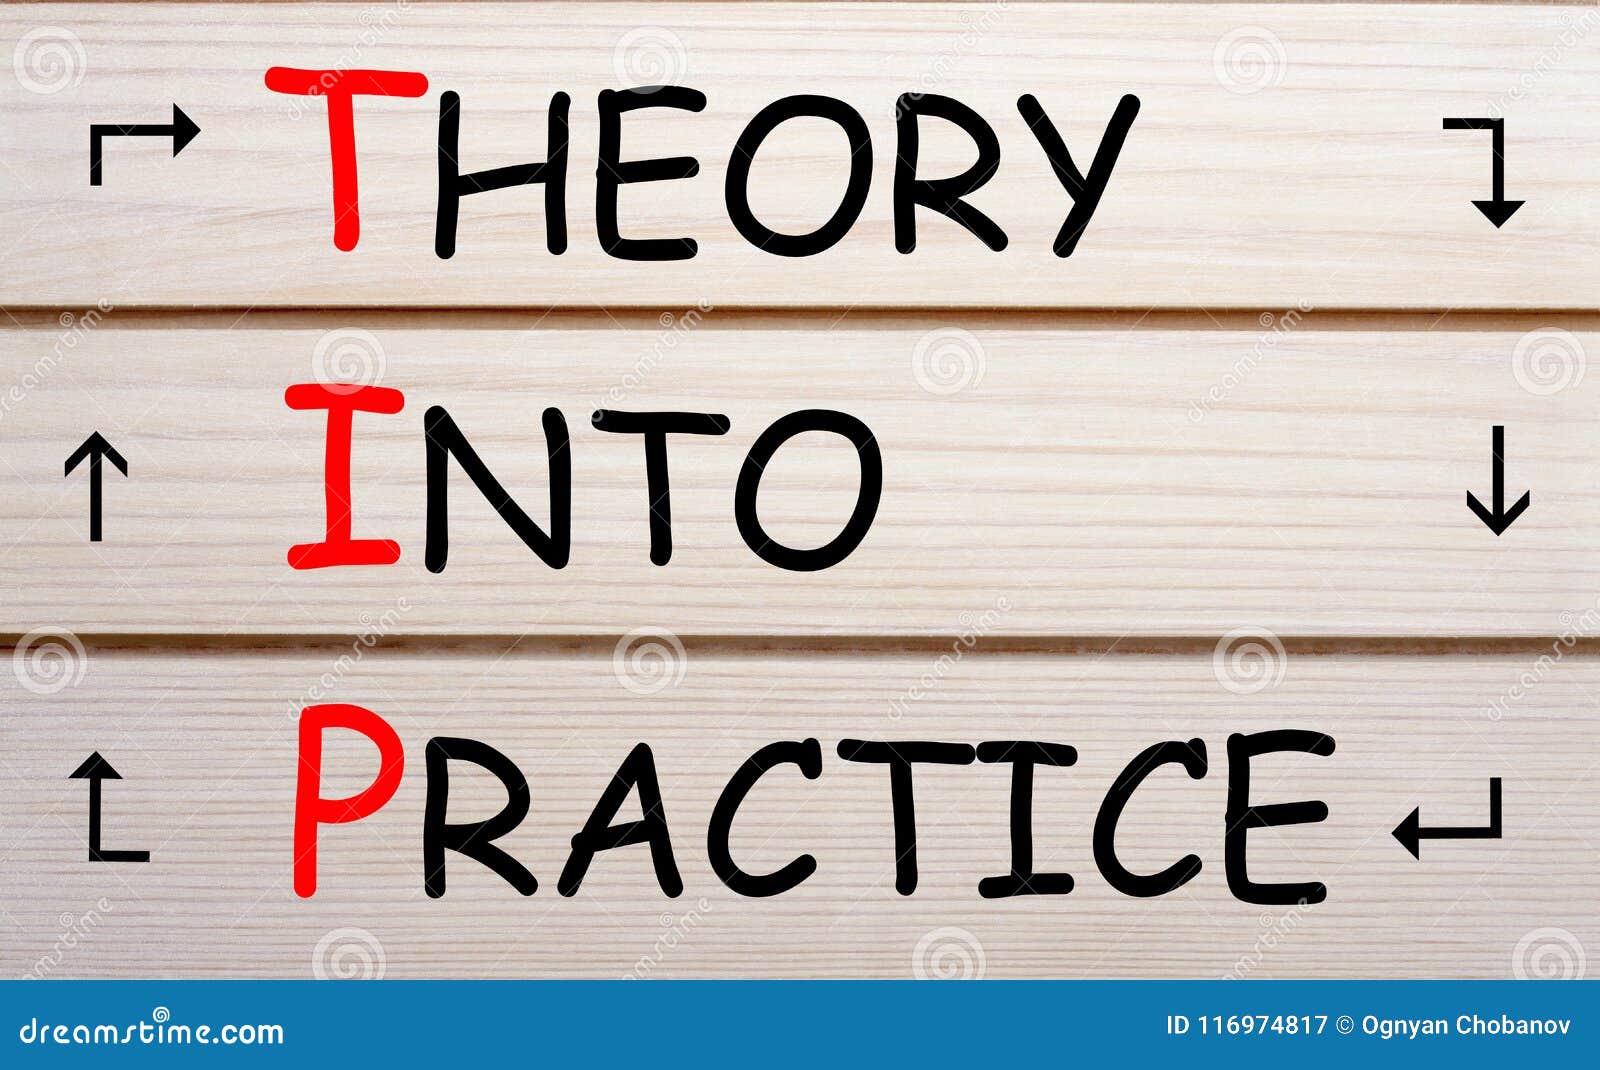 Как пишется деревяный. Theory into Practice. Теория и практика картинки. Theory or Practice. Теория vs практика.